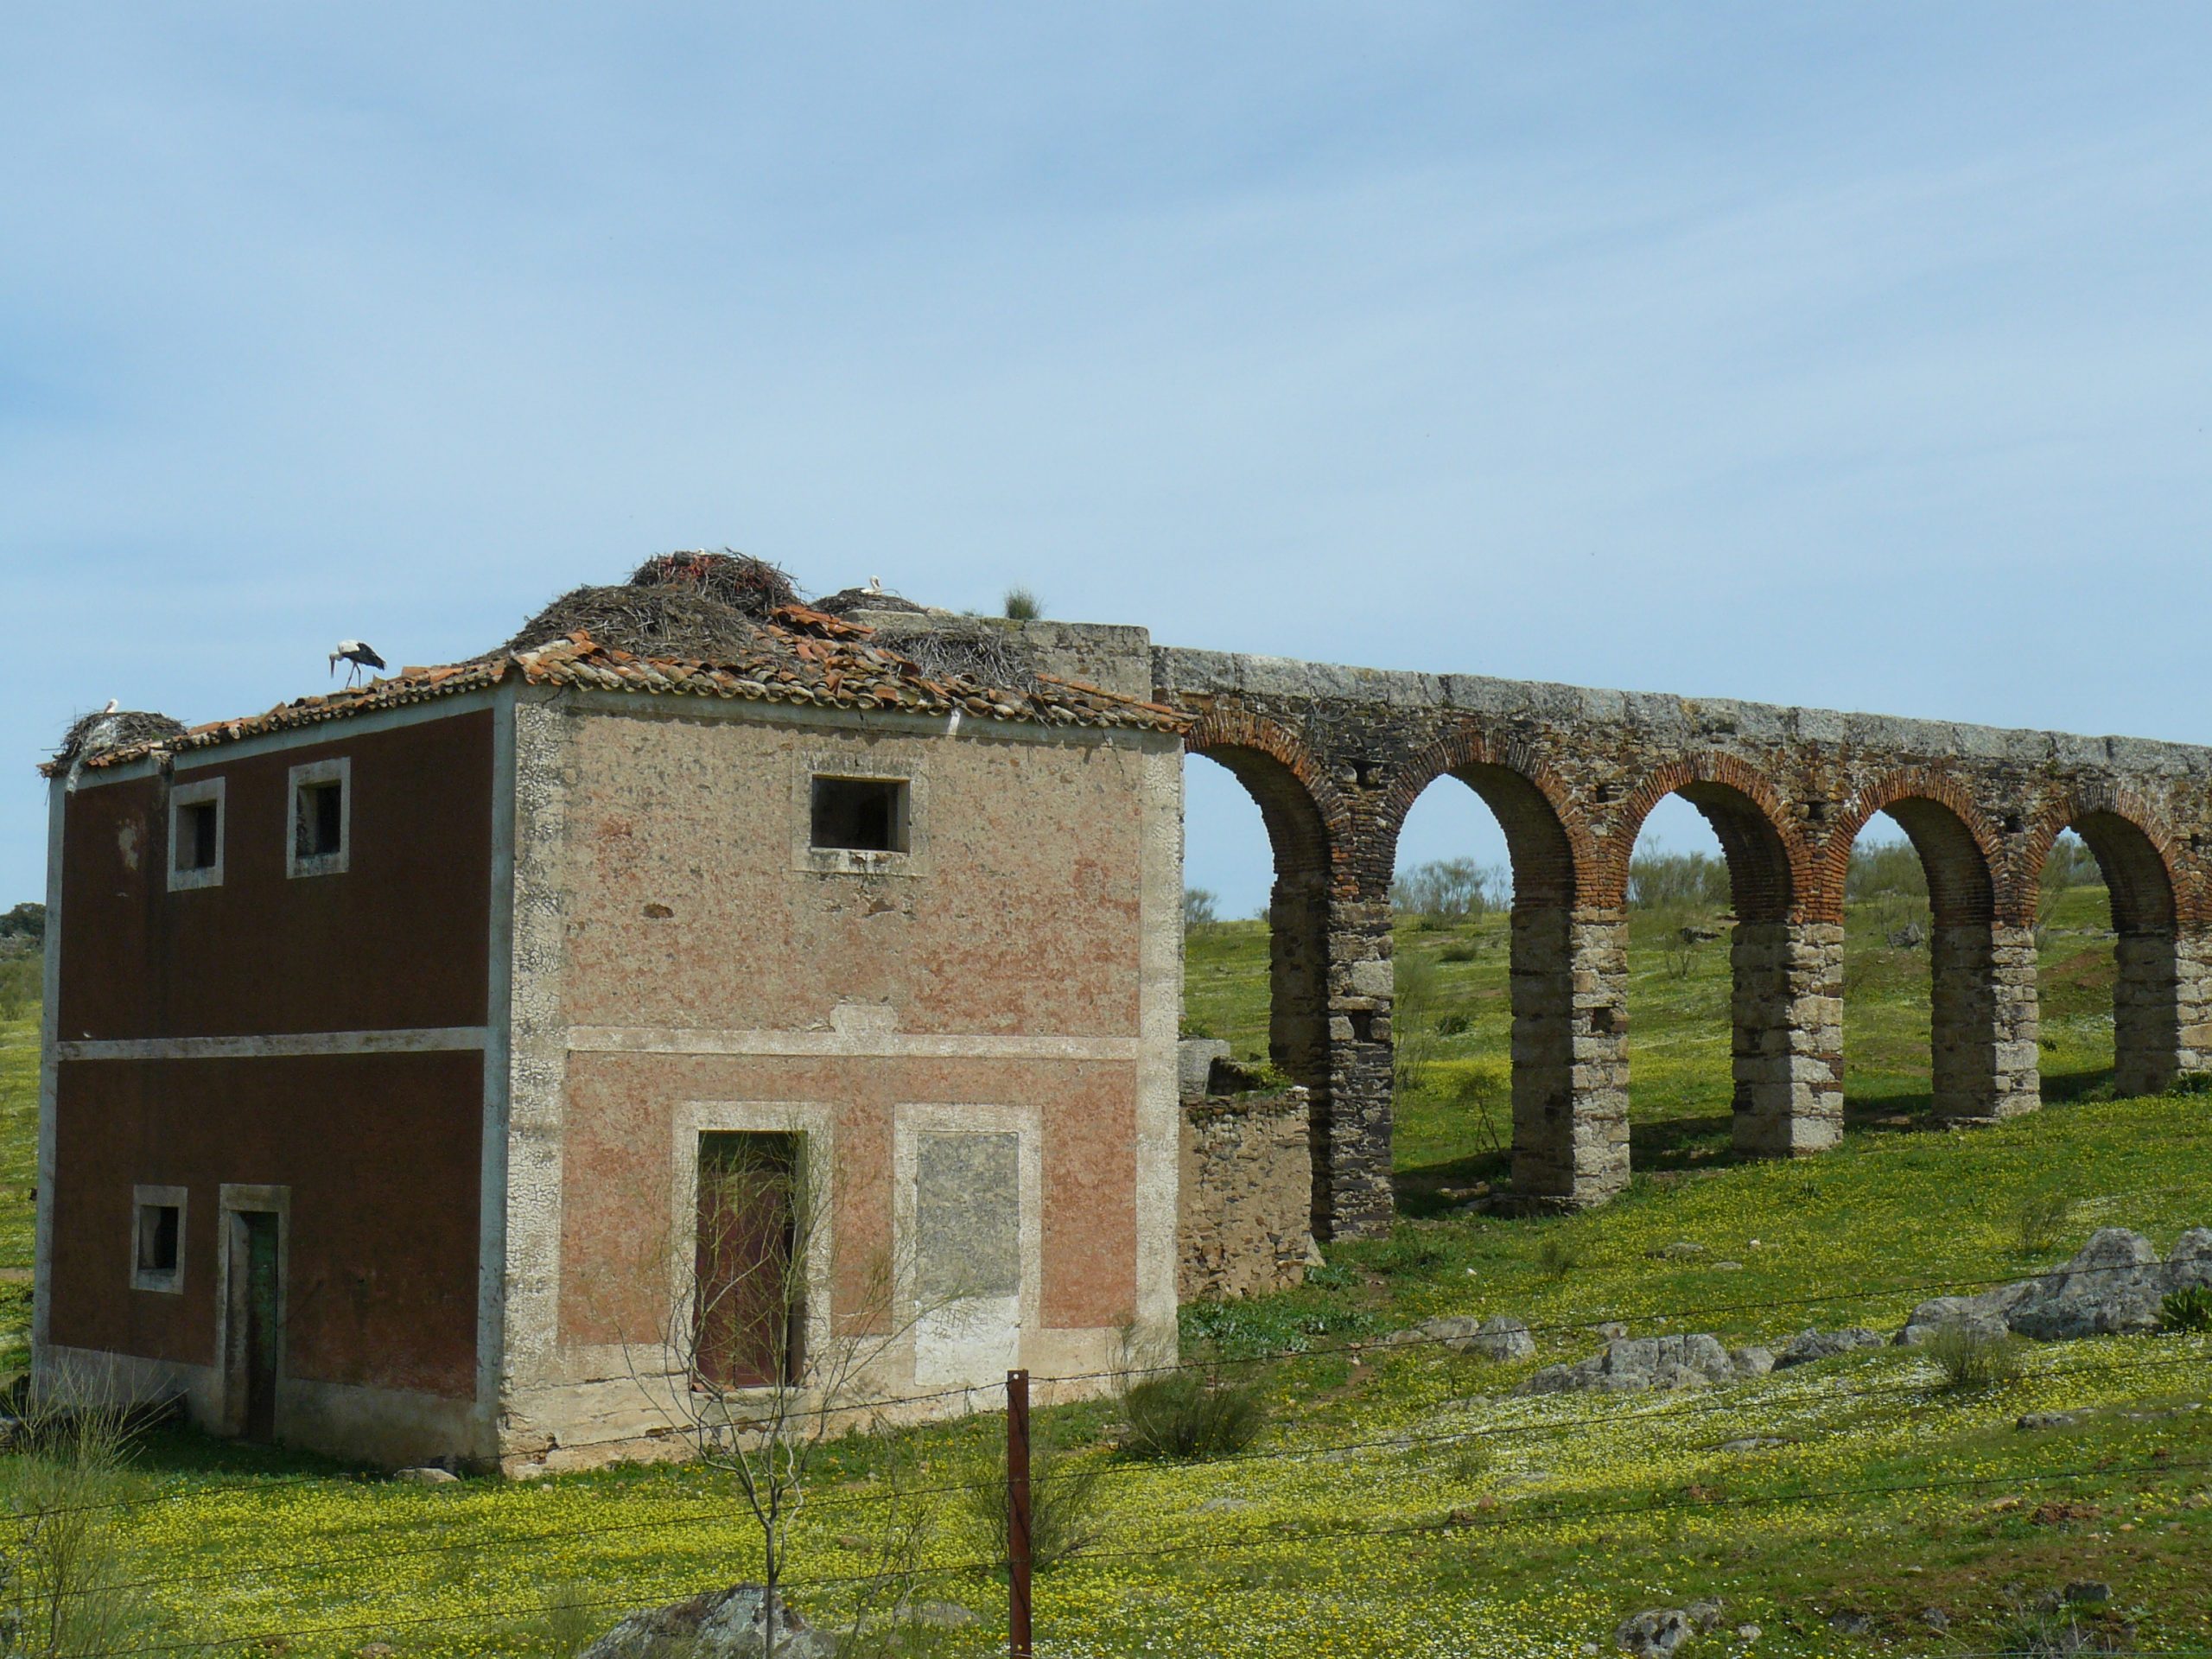 Huis, aquaduct en ooievaarsnesten